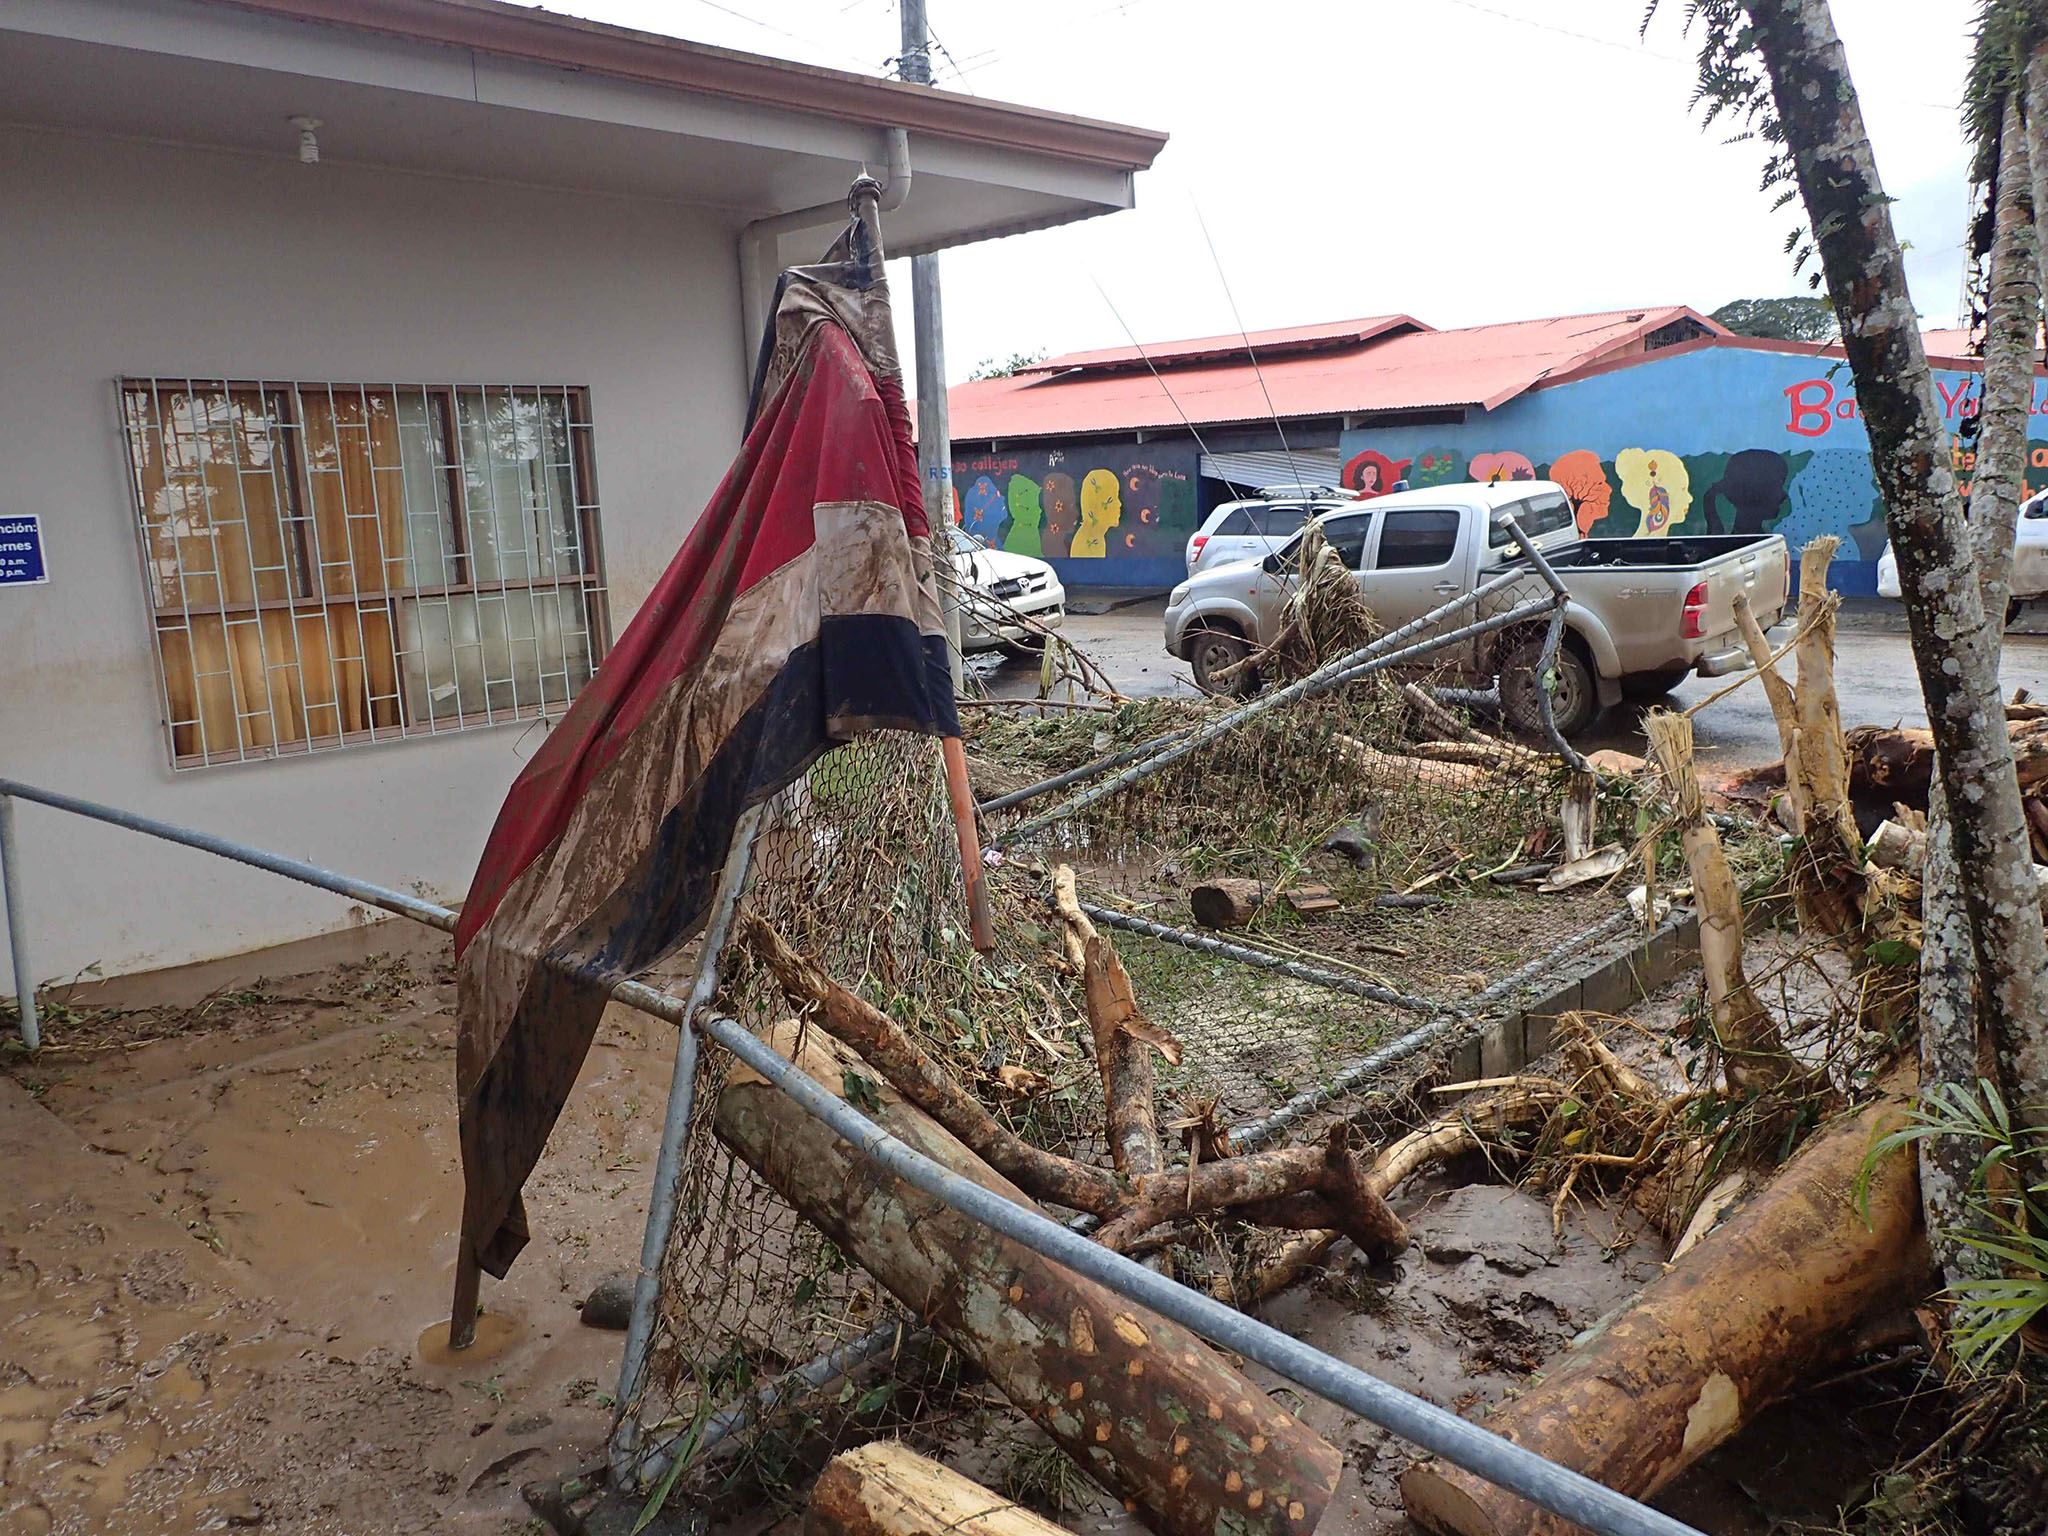  Costa Rica reporta 10 muertos y severos daños por huracán ‘Otto’